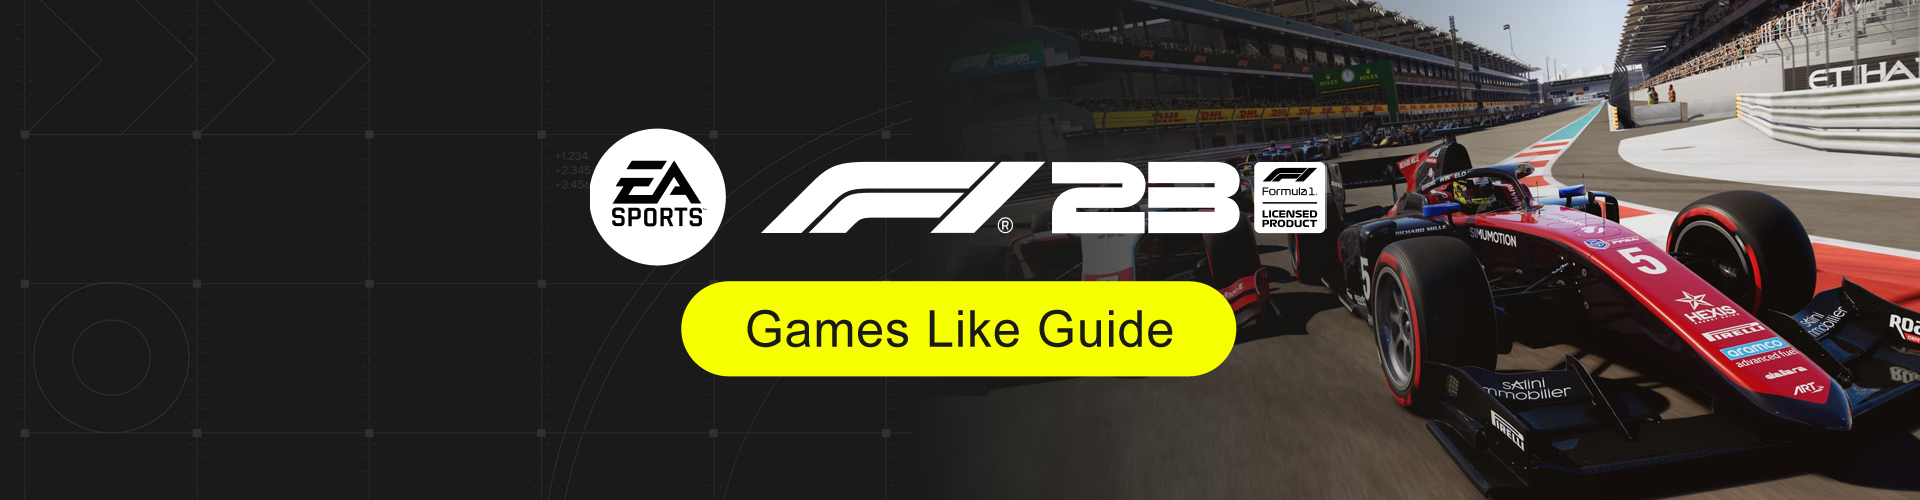 Giochi Come F1 23: Le migliori simulazioni di corse